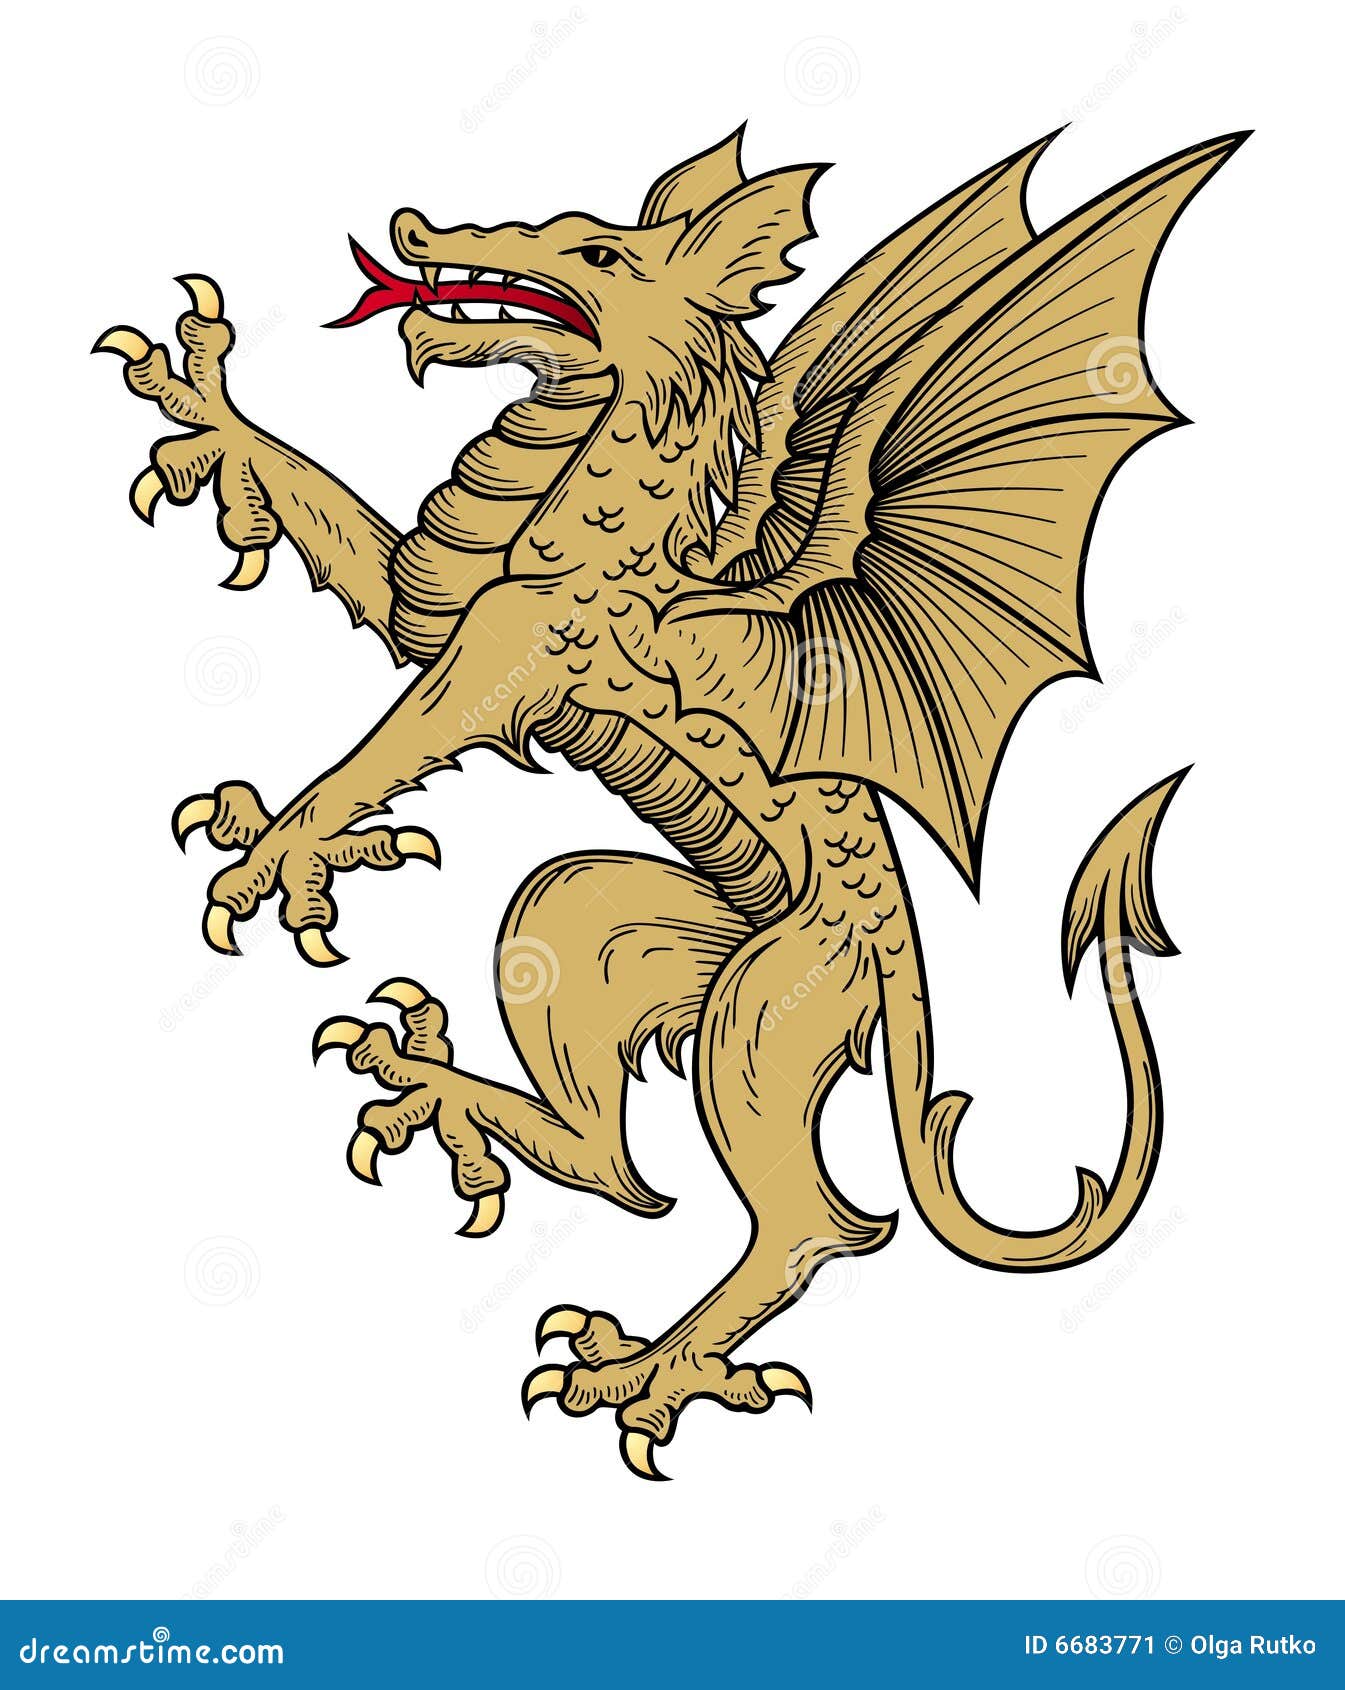 506 * Diseño de dragón la edad media Gothic Dragon adorno en la cintura Fantasy Buckle 